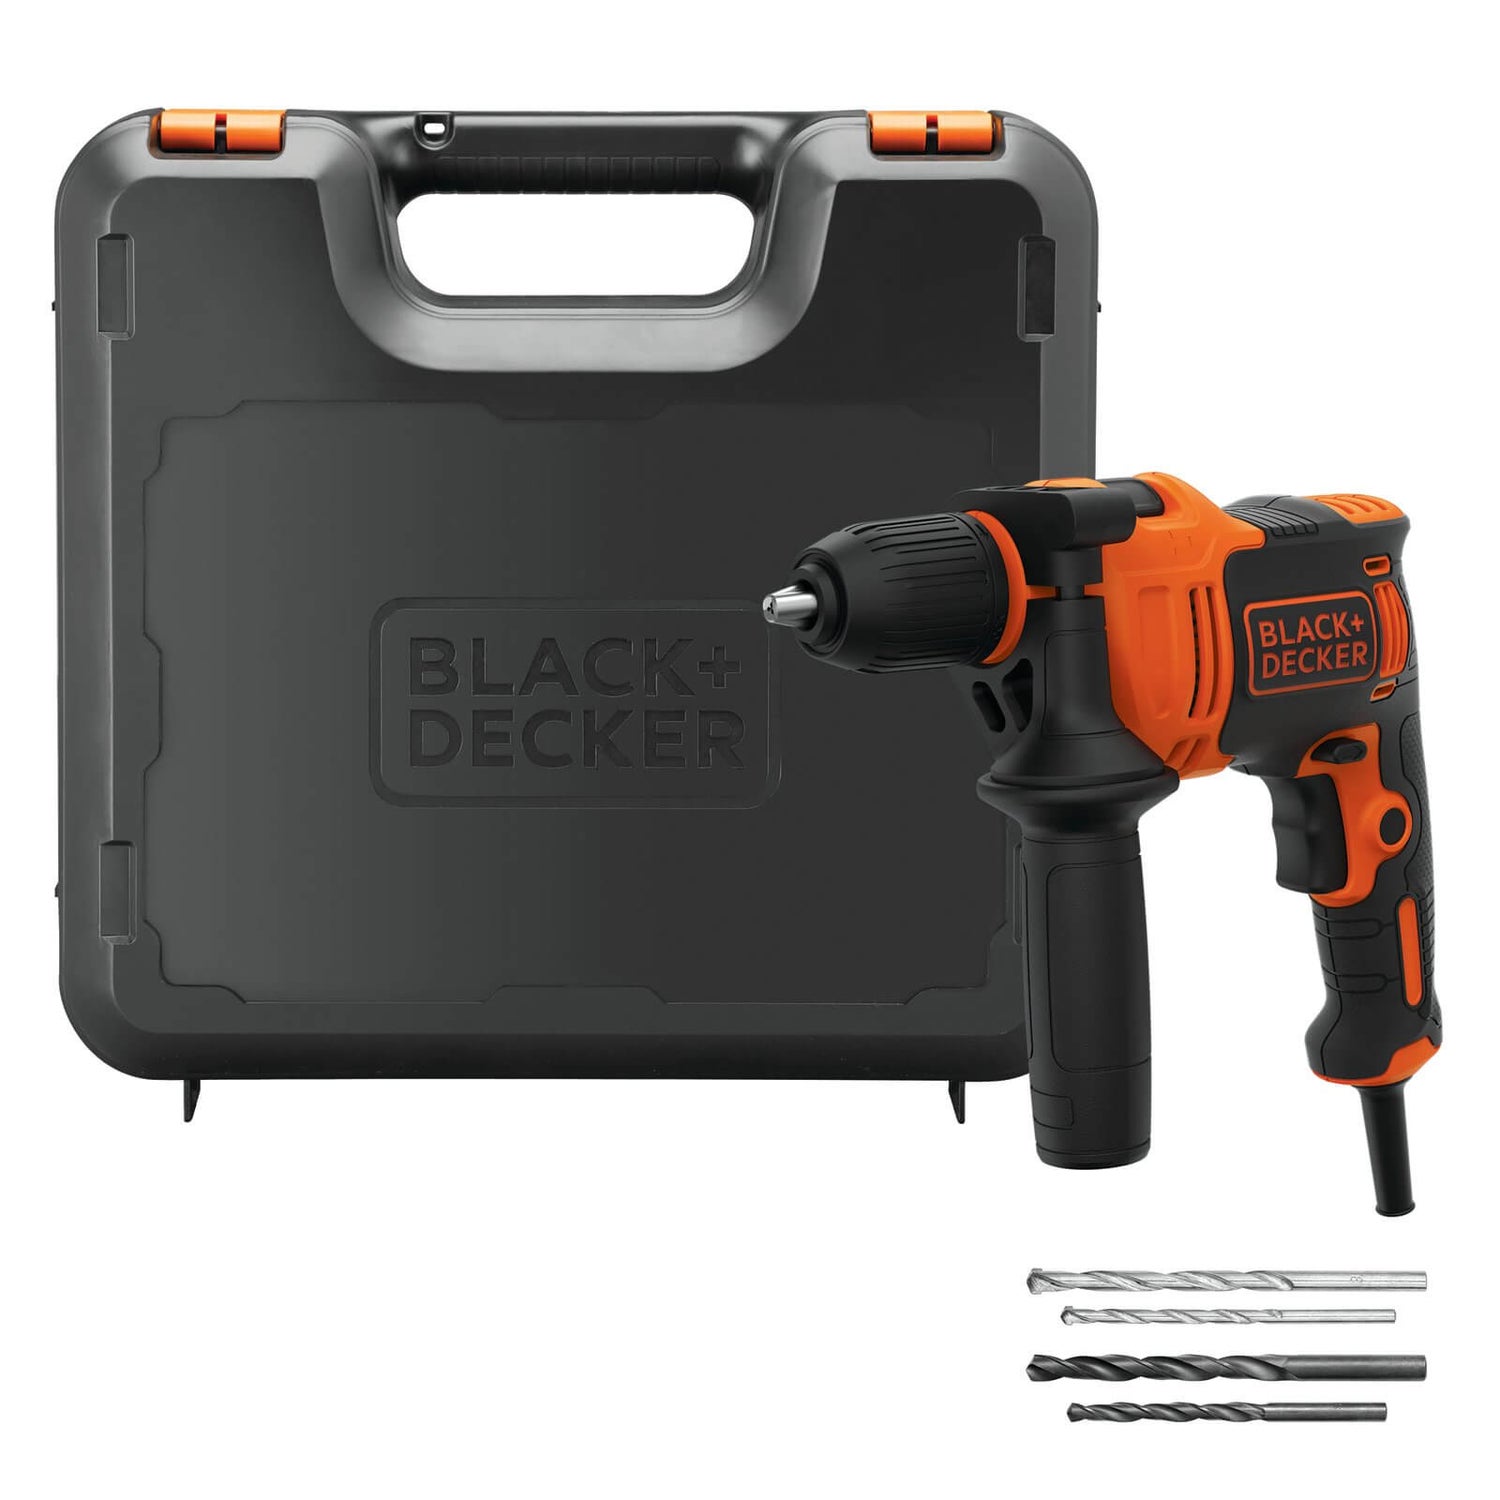 Black + Decker A7188 Drill and Screwdriver Bit Set 50-Piece 